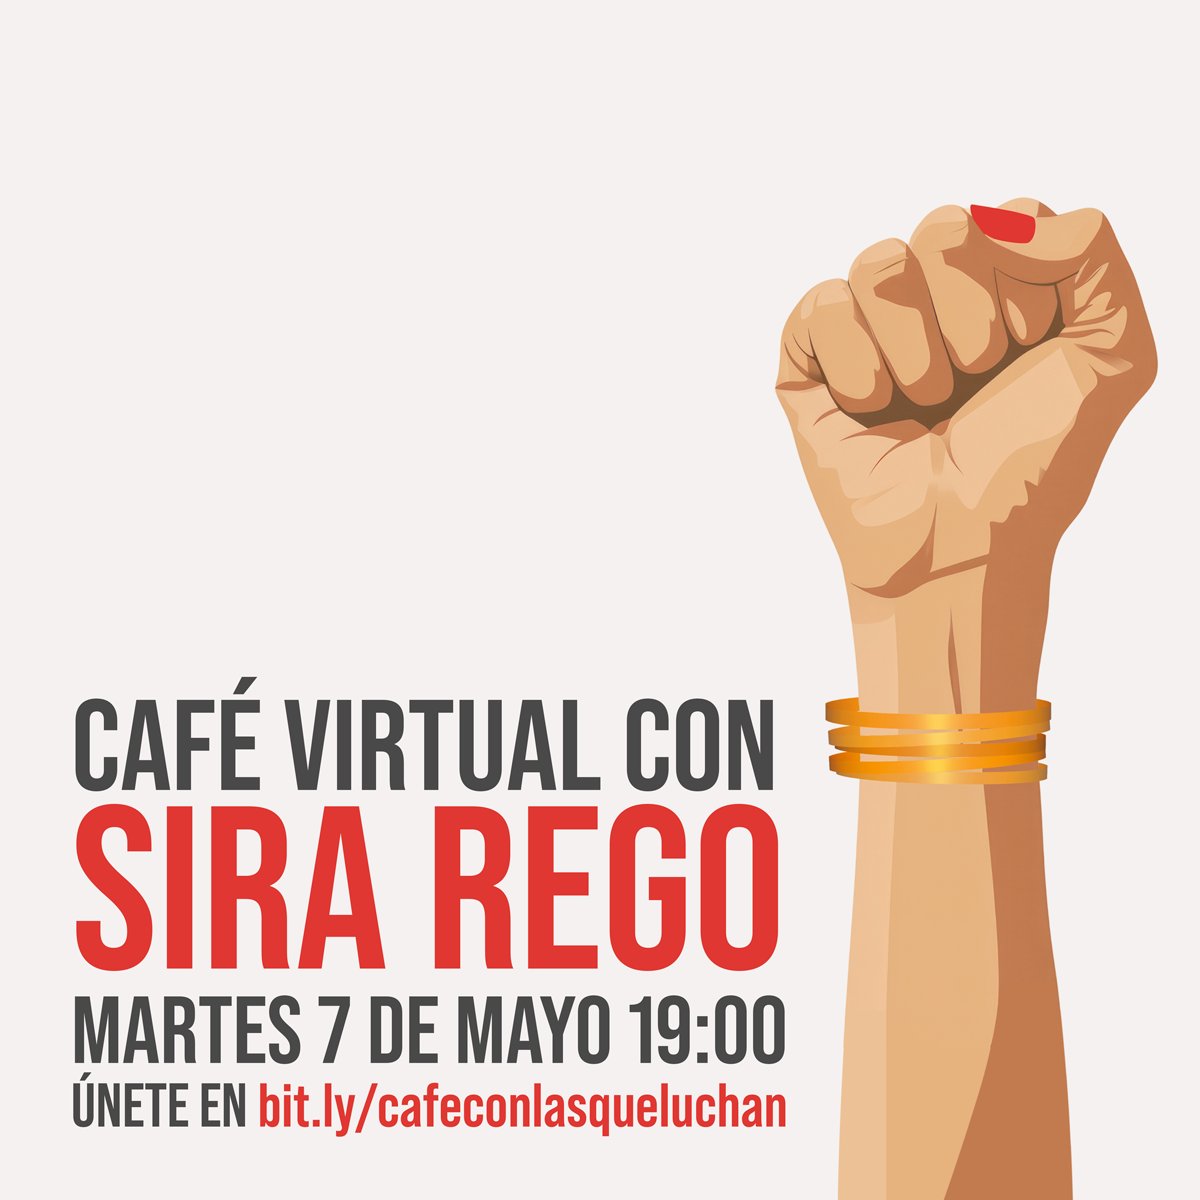 Esta tarde os espero para tomarnos un café virtual en el que escucharnos y conversar sobre la propuesta que llevamos adelante desde #ArribaLasQueLuchan. 🗓️Martes 7 a las 19:00 h. bit.ly/cafeconlasquel…